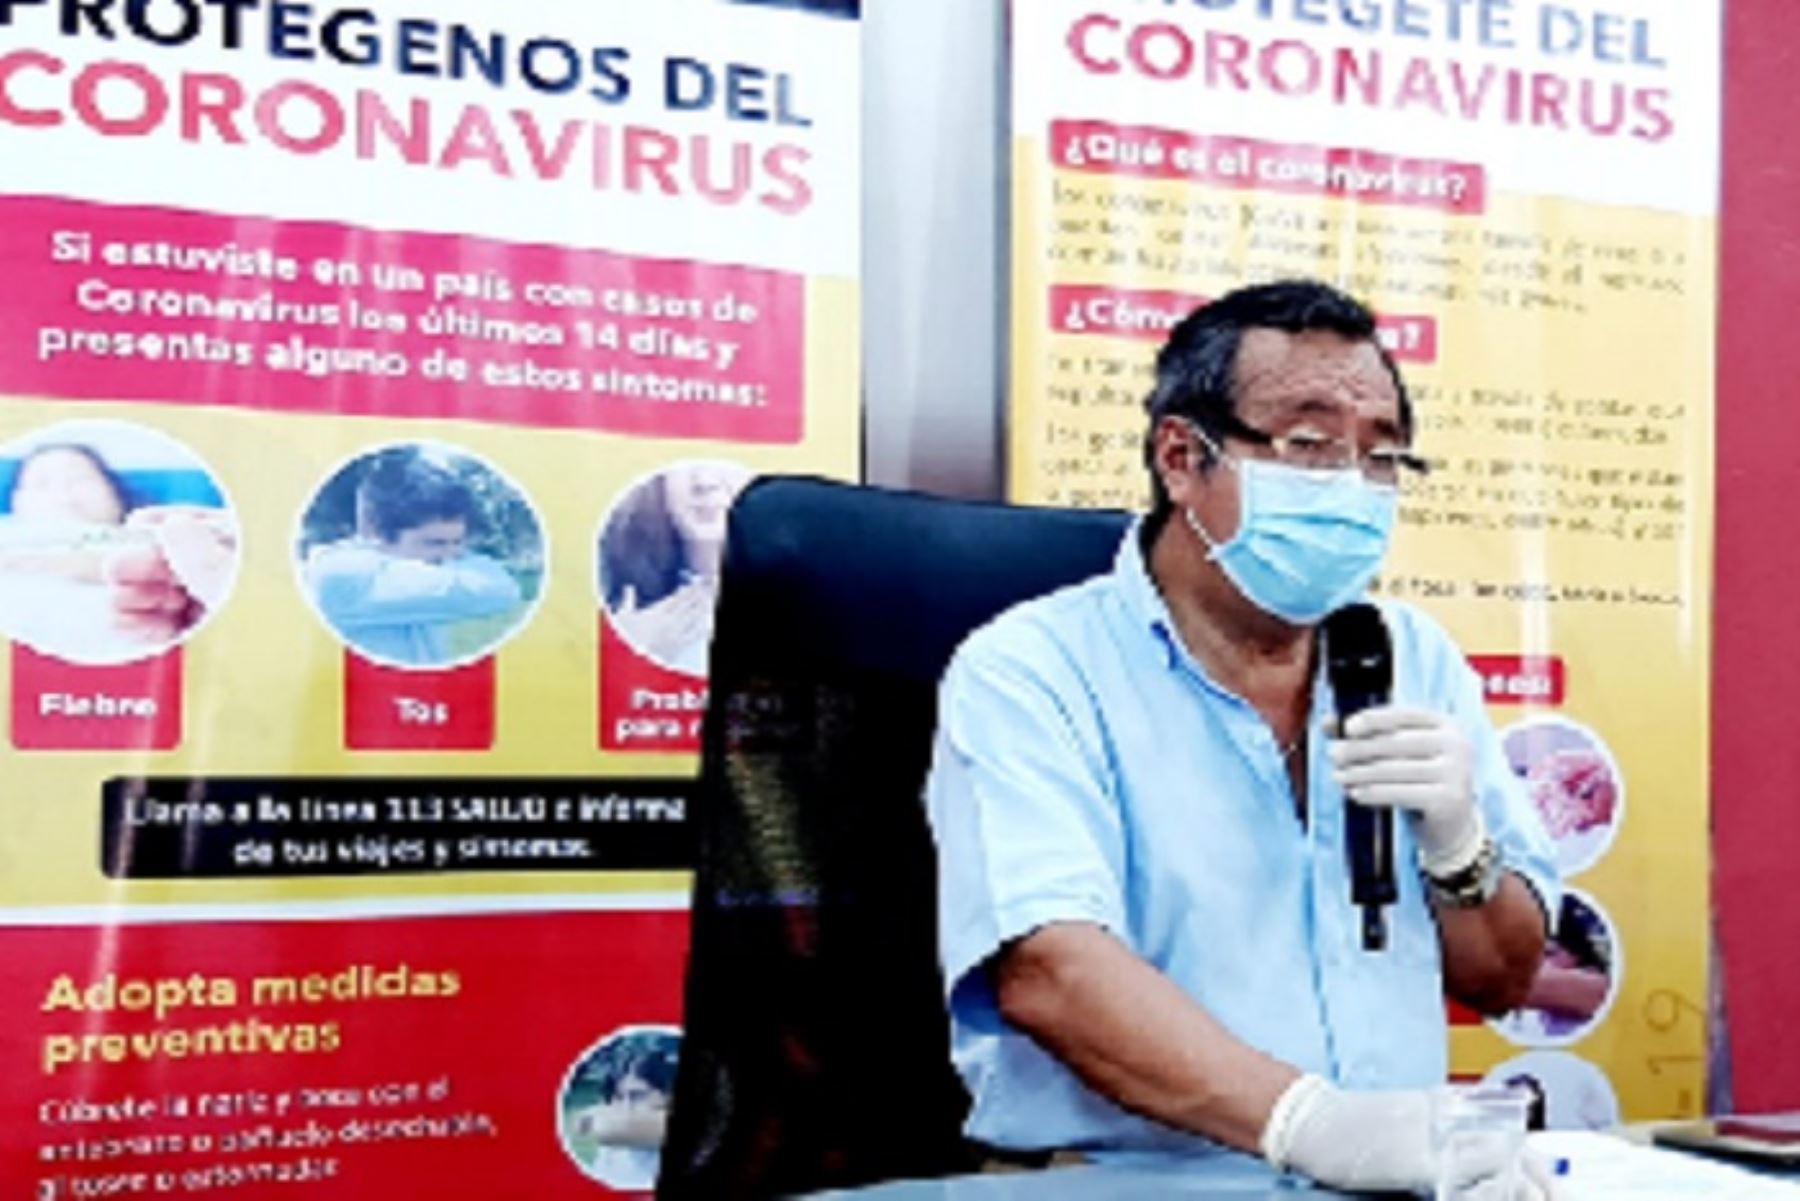 El gobernador regional de Madre de Dios, Luis Hidalgo, respaldó la ampliación del estado de emergencia nacional por el coronavirus.